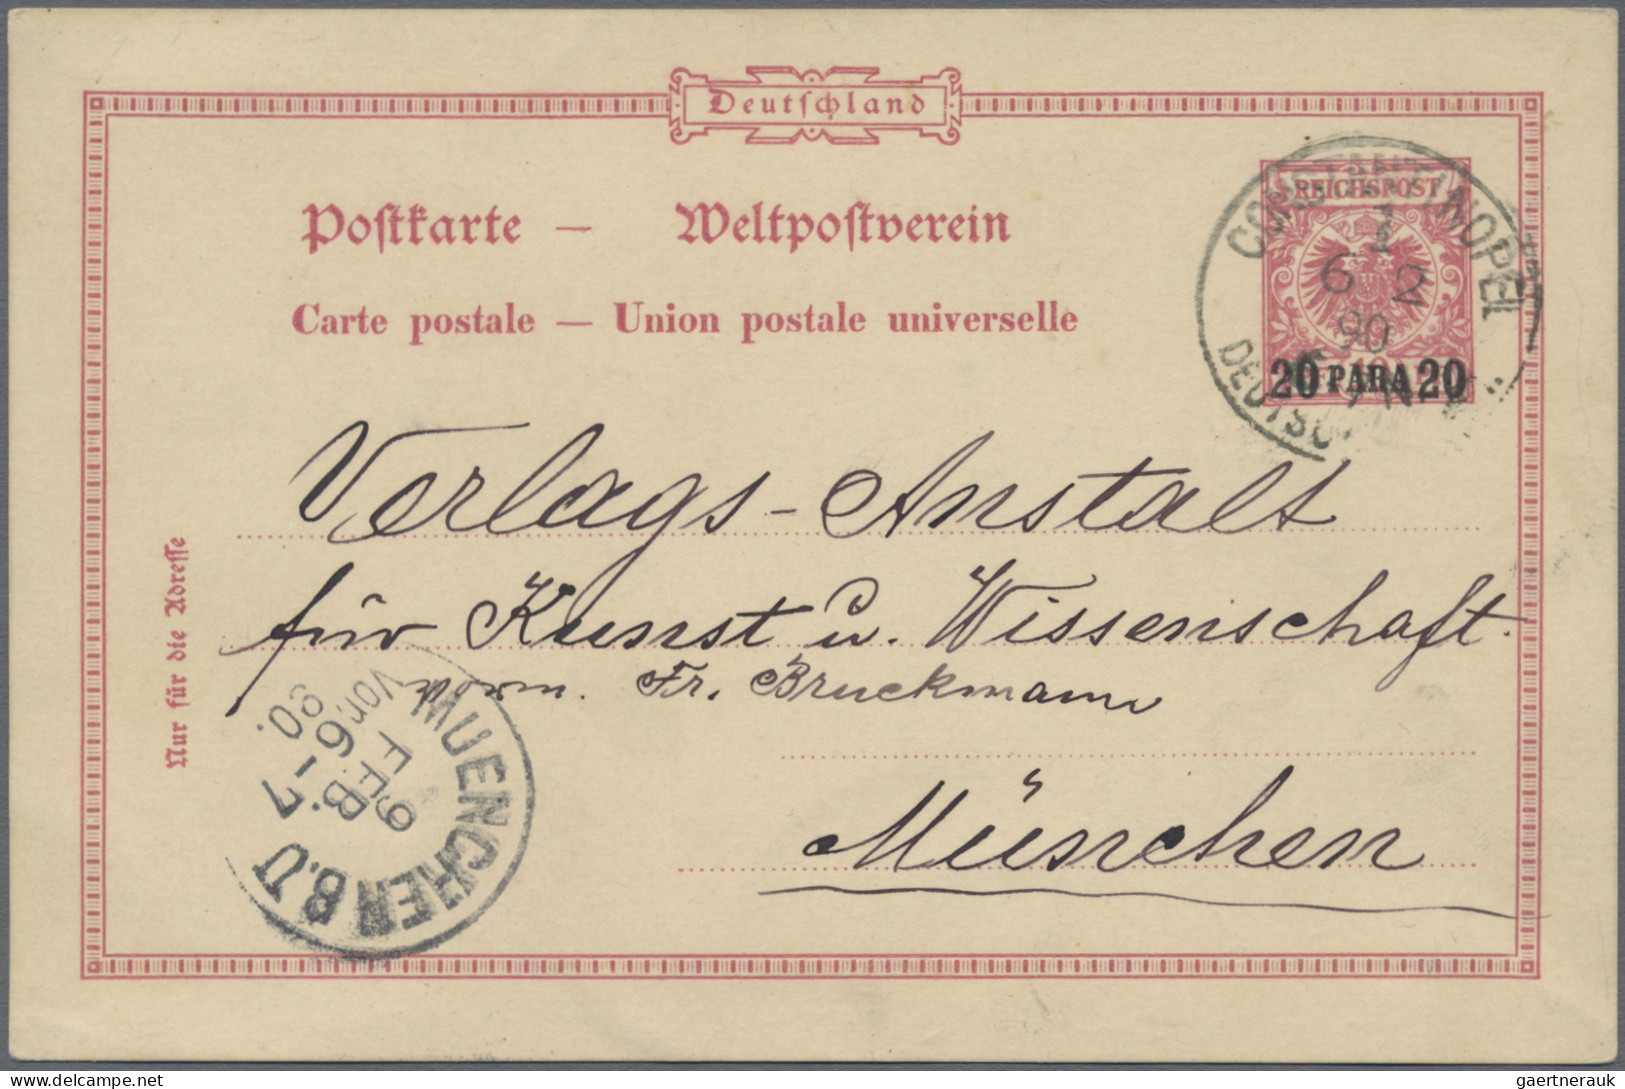 Deutsche Post in der Türkei - Ganzsachen: 1896/1913, saubere Partie von 18 gebra